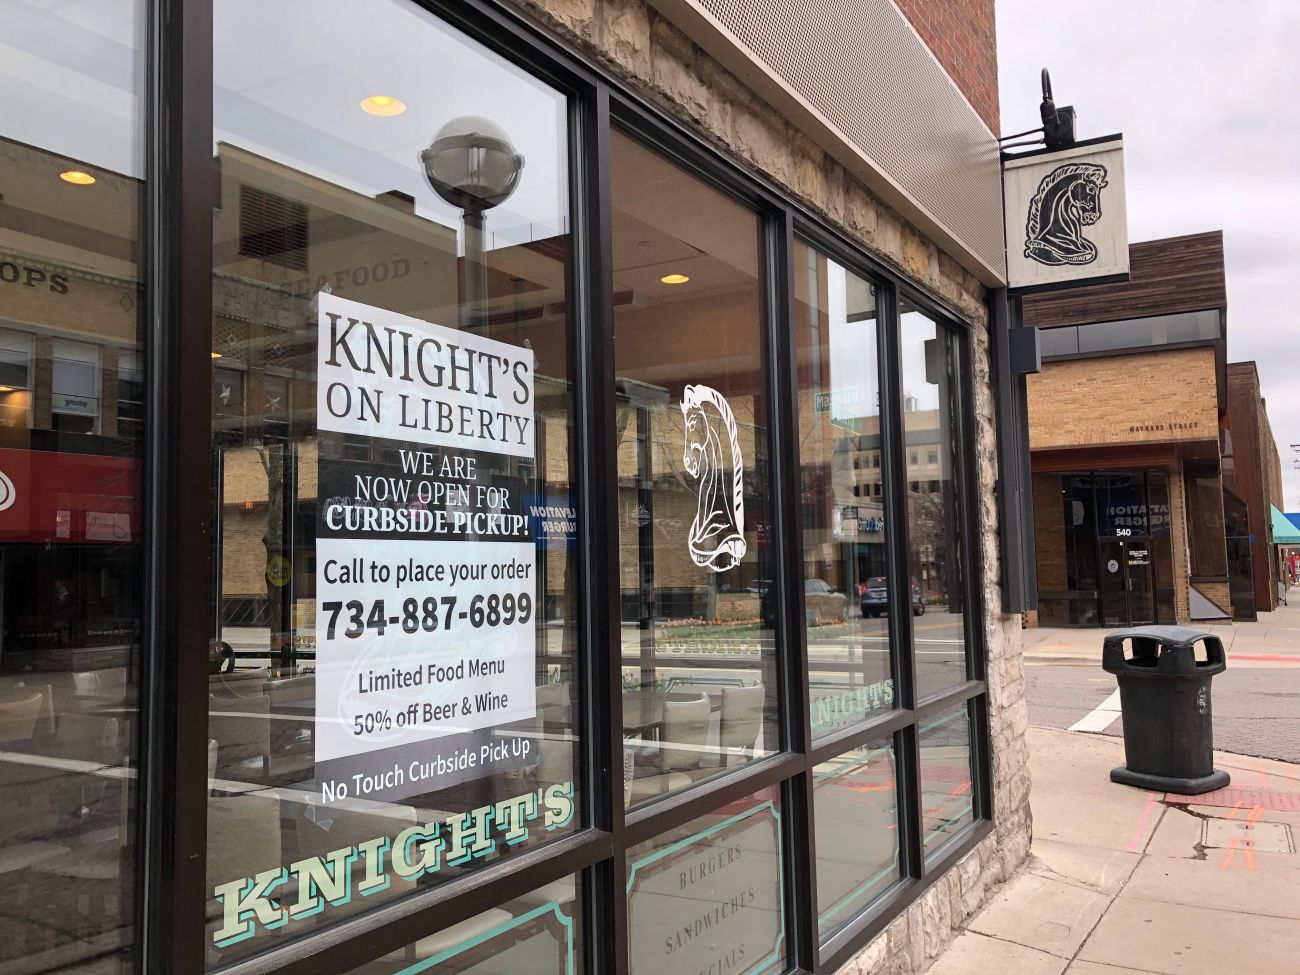 Knight's